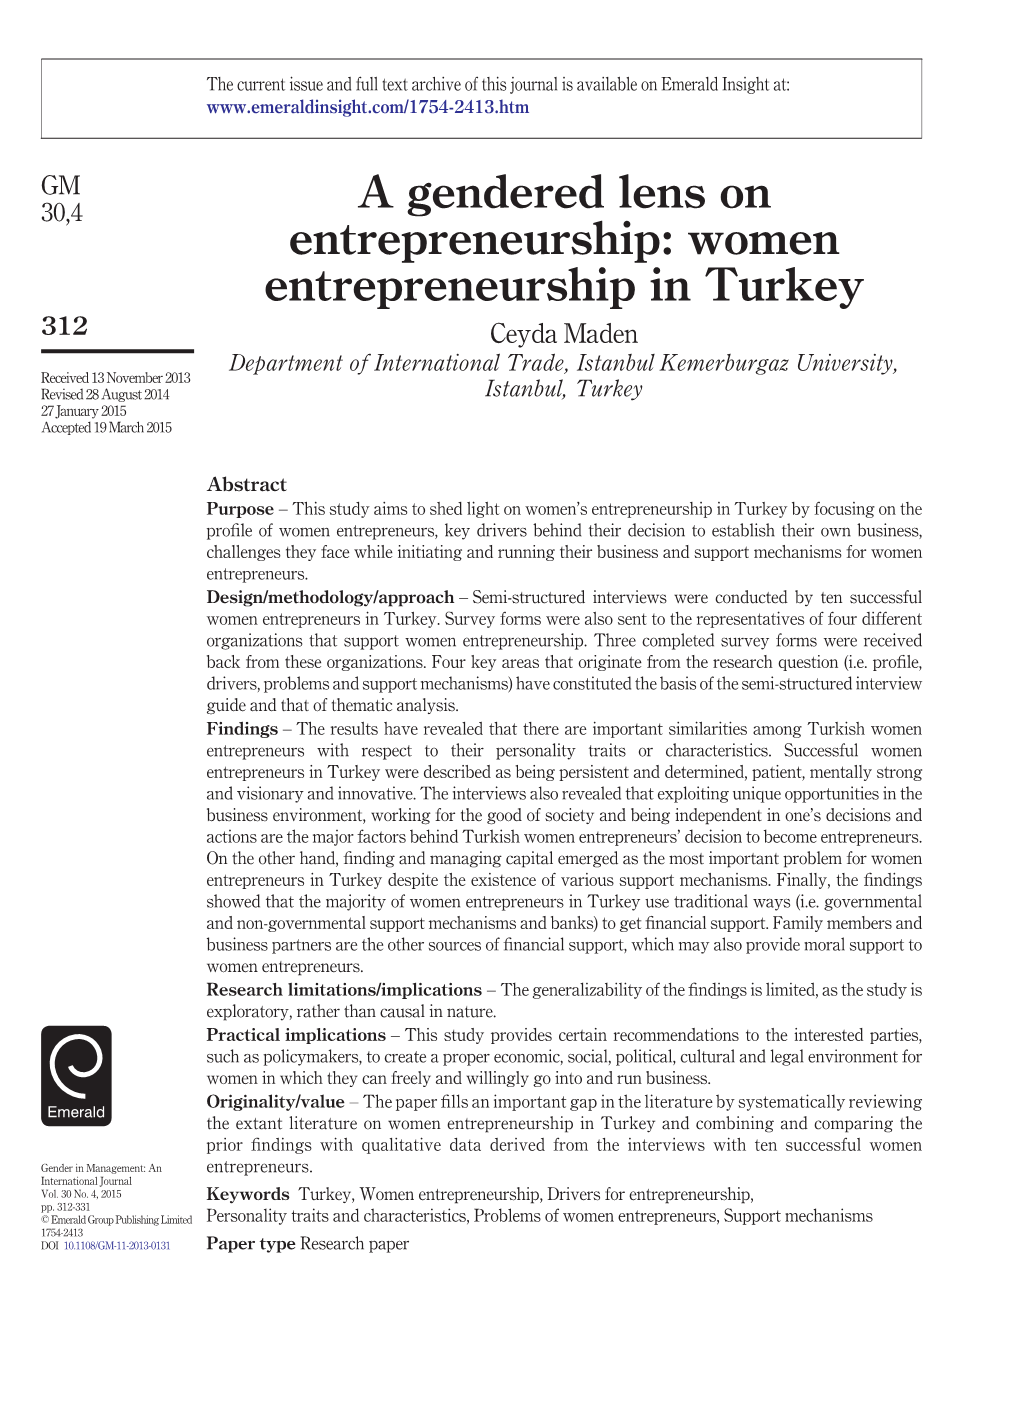 A Gendered Lens on Entrepreneurship: Women Entrepreneurship in Turkey